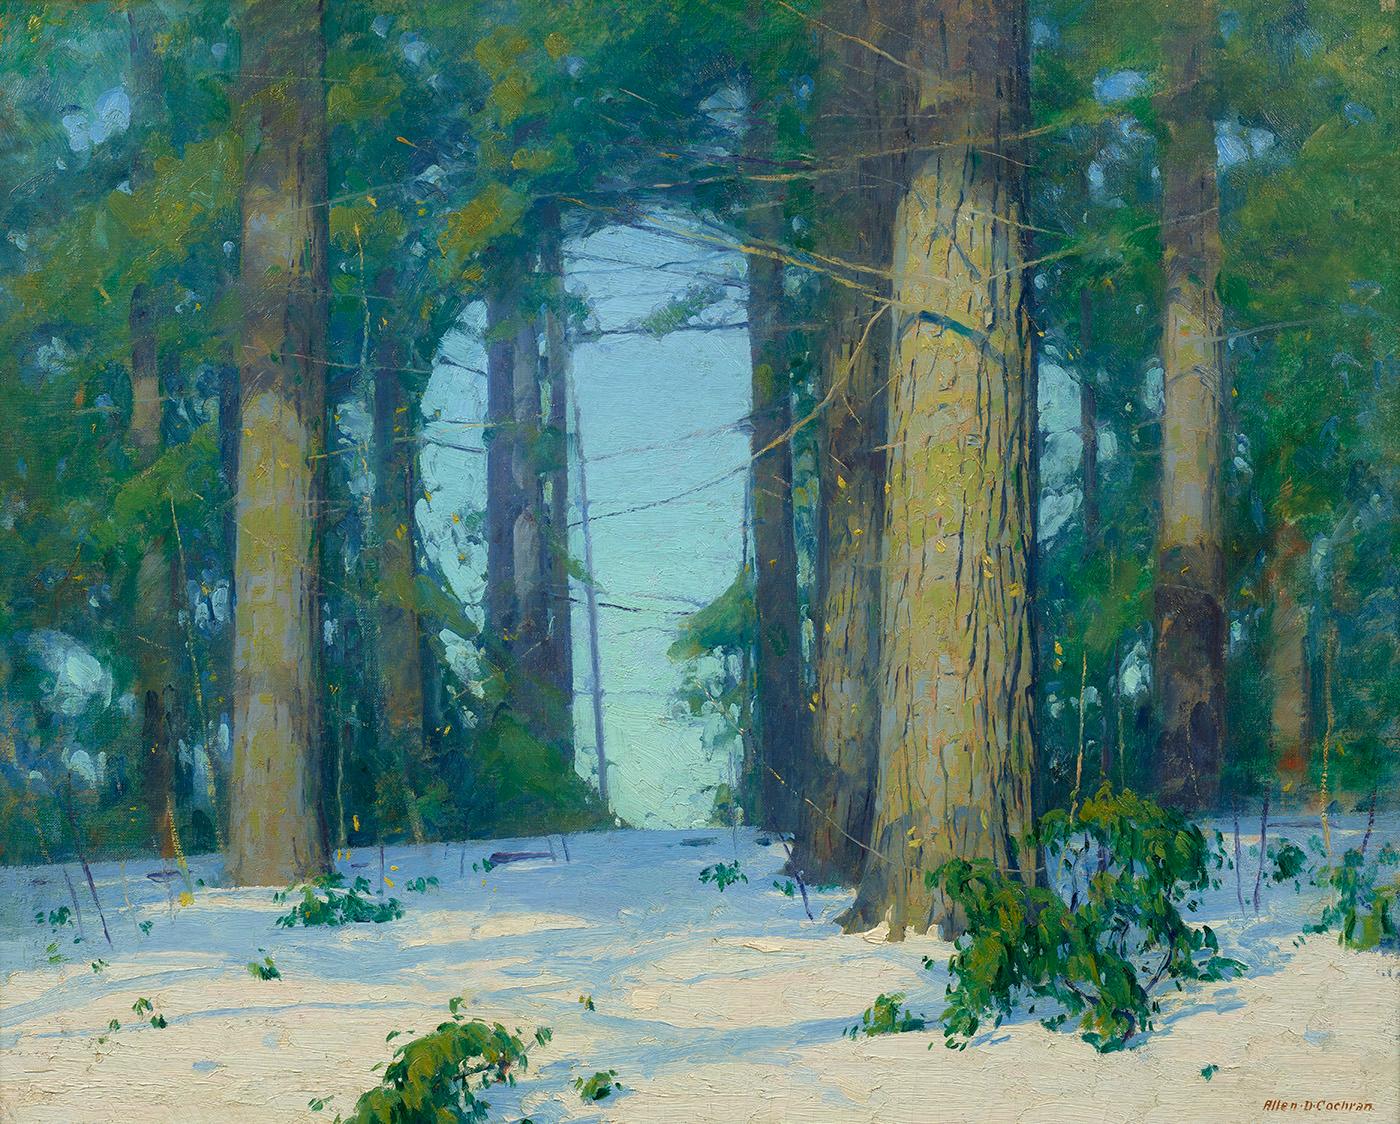 Allen Dean Cochran Landscape Painting - Winter Clearing 